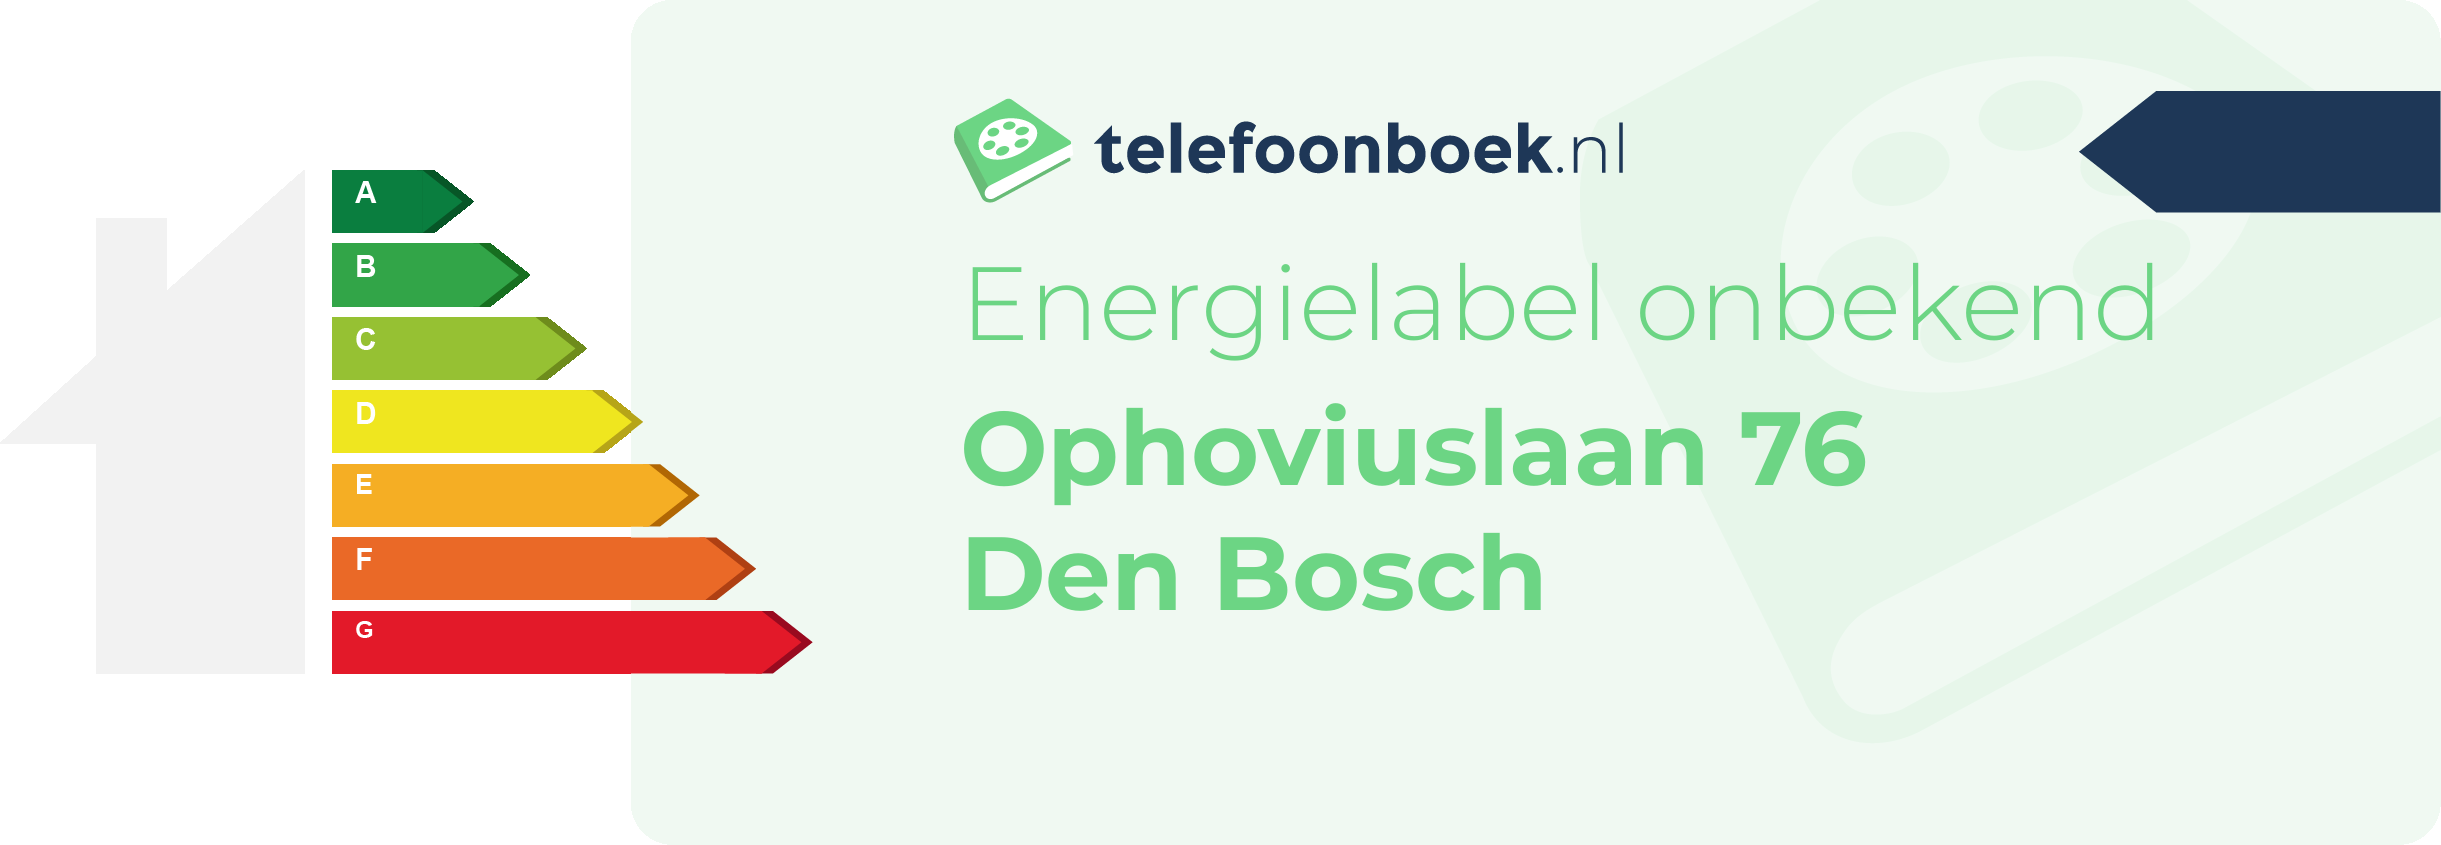 Energielabel Ophoviuslaan 76 Den Bosch